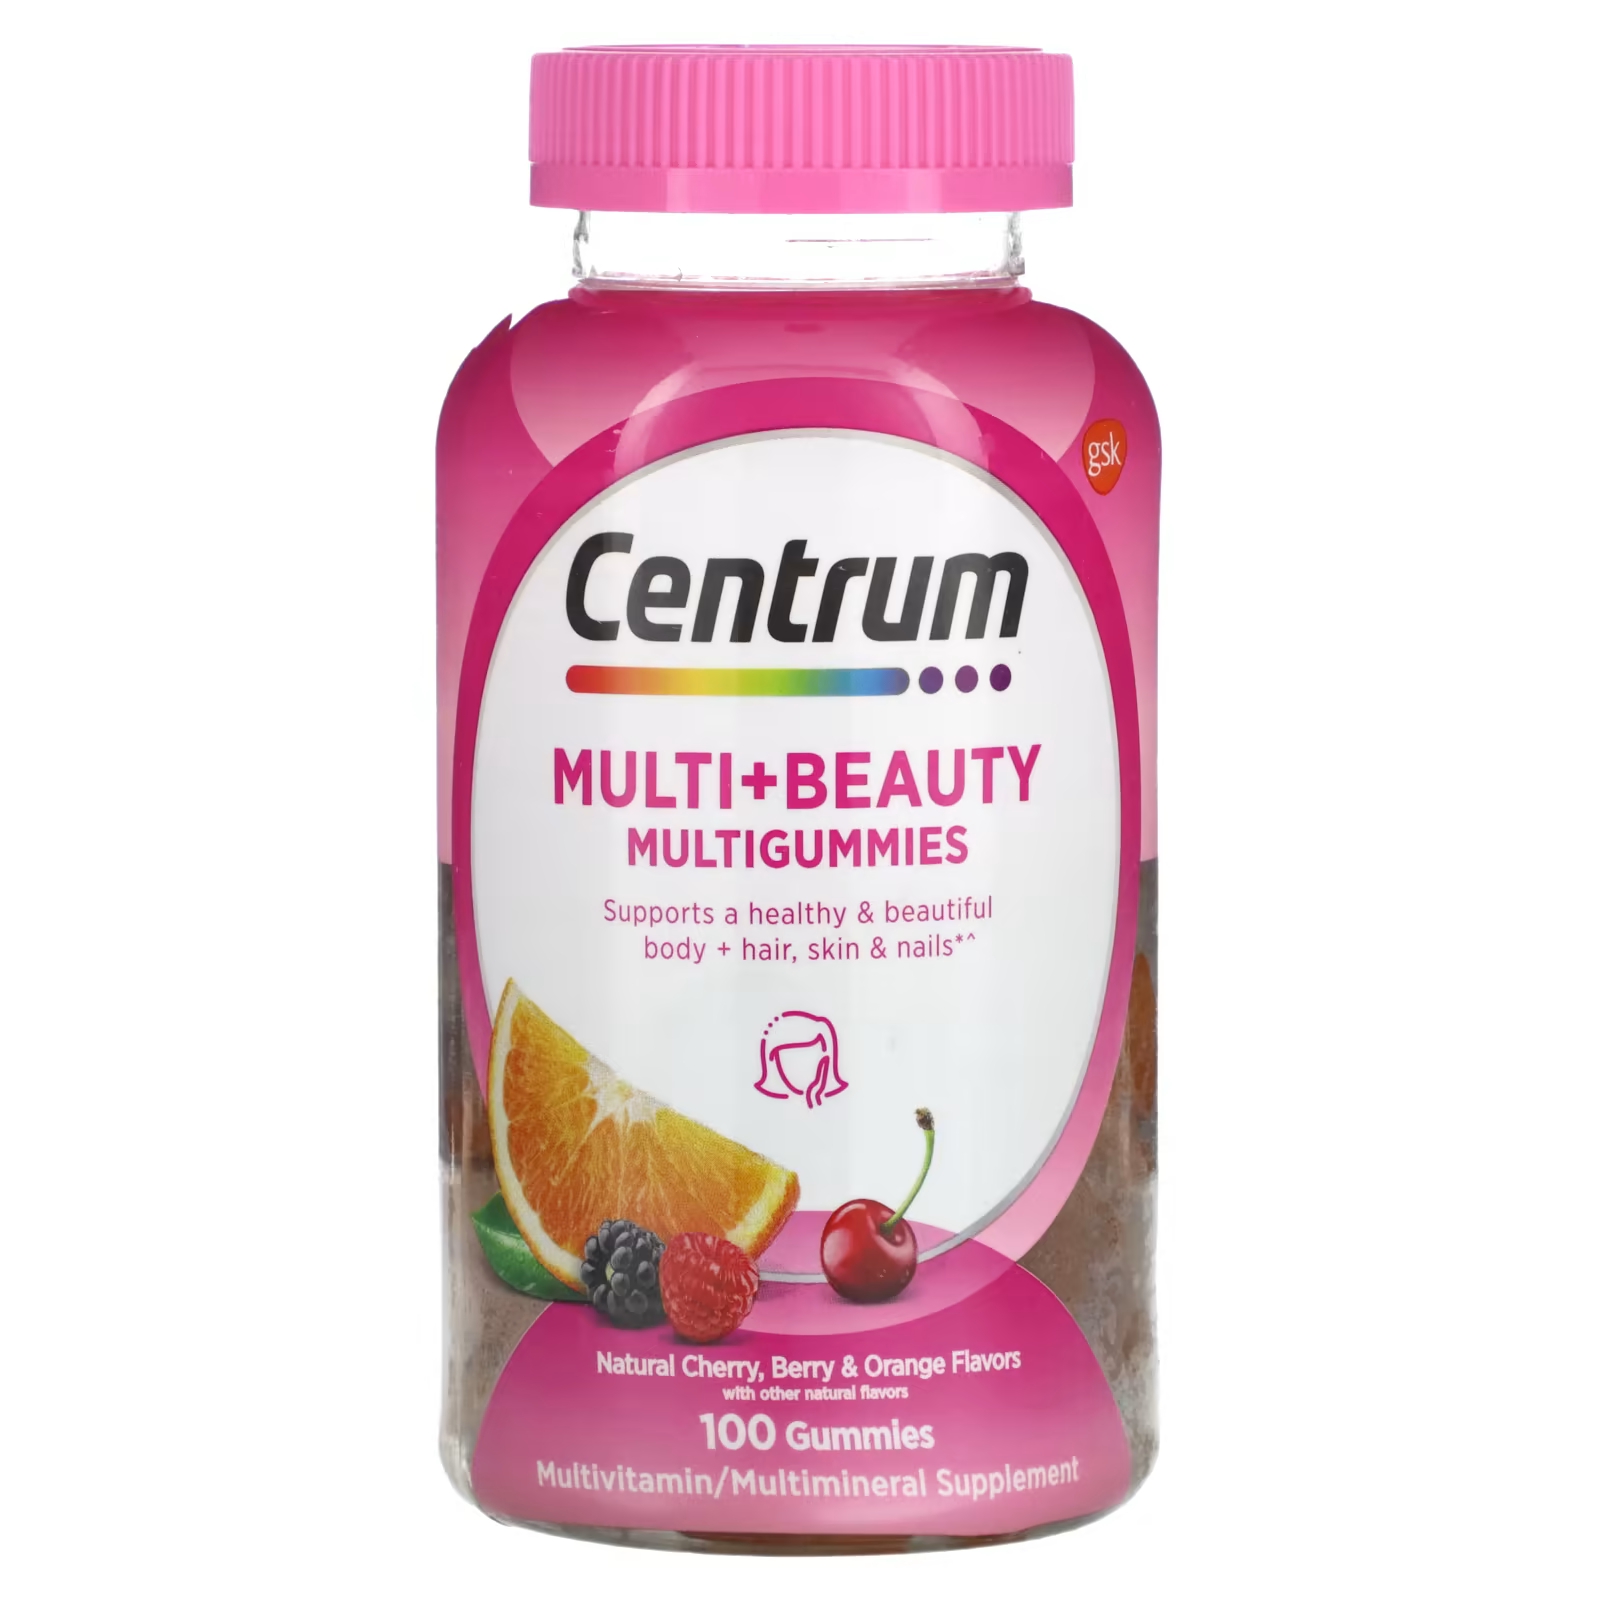 Мультивитаминная добавка Centrum Multi + Beauty Multigummies вишня, ягоды и апельсин, 100 жевательных конфет мультивитамины centrum multigummies adults 50 120 жевательных конфет